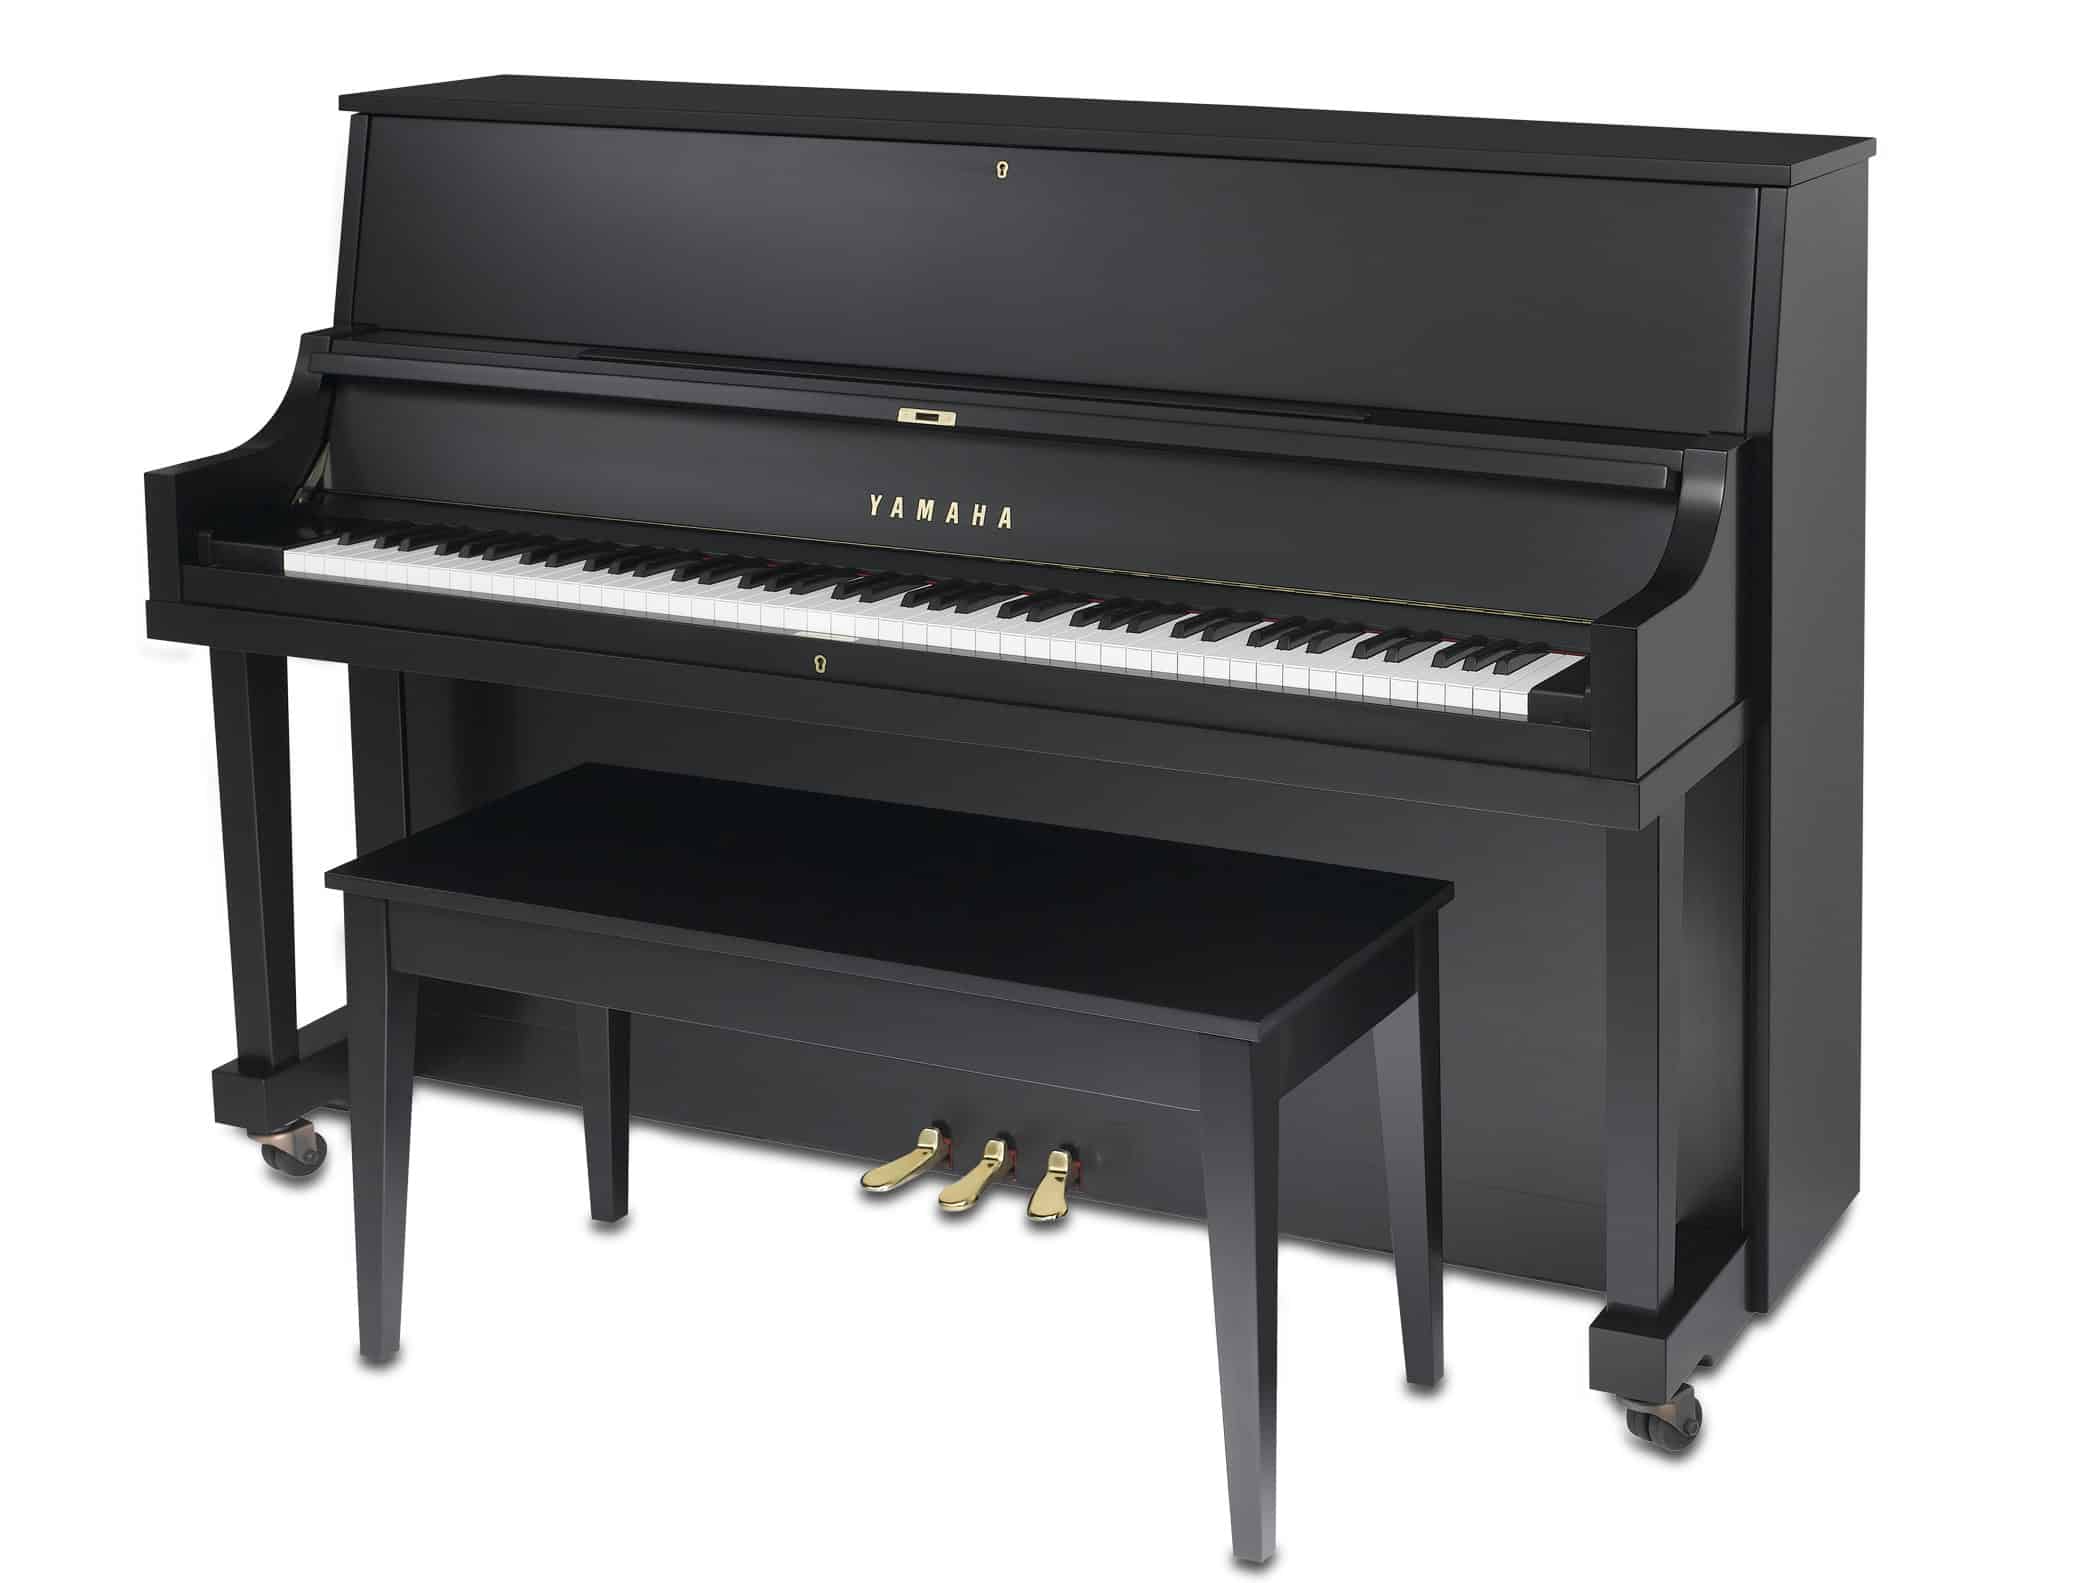 Yamaha P22 Upright Piano in Satin Ebony at 3/4 Angle